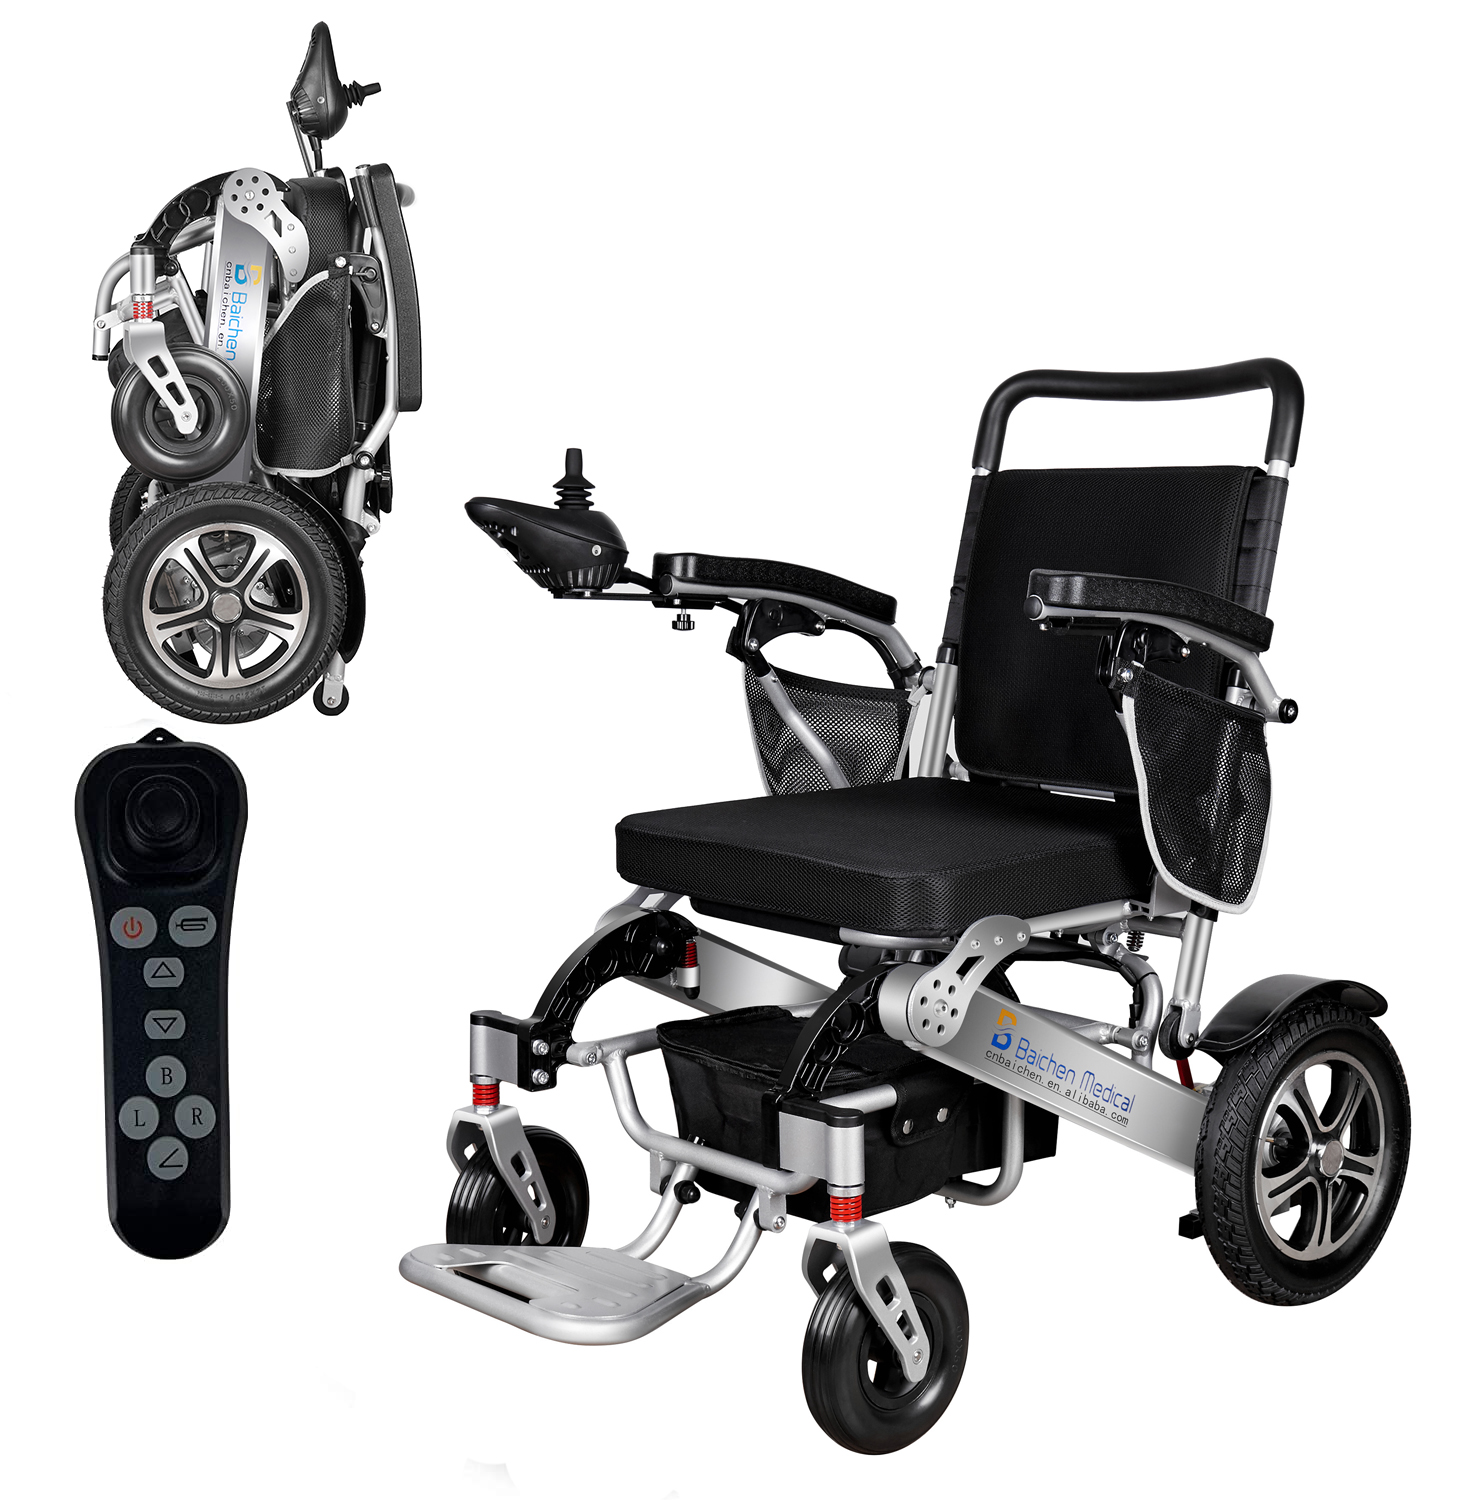 Πτυσσόμενο κράμα αλουμινίου ελαφρύ και οικονομικό χειροκίνητο αναπηρικό αμαξίδιο για άτομα με ειδικές ανάγκες